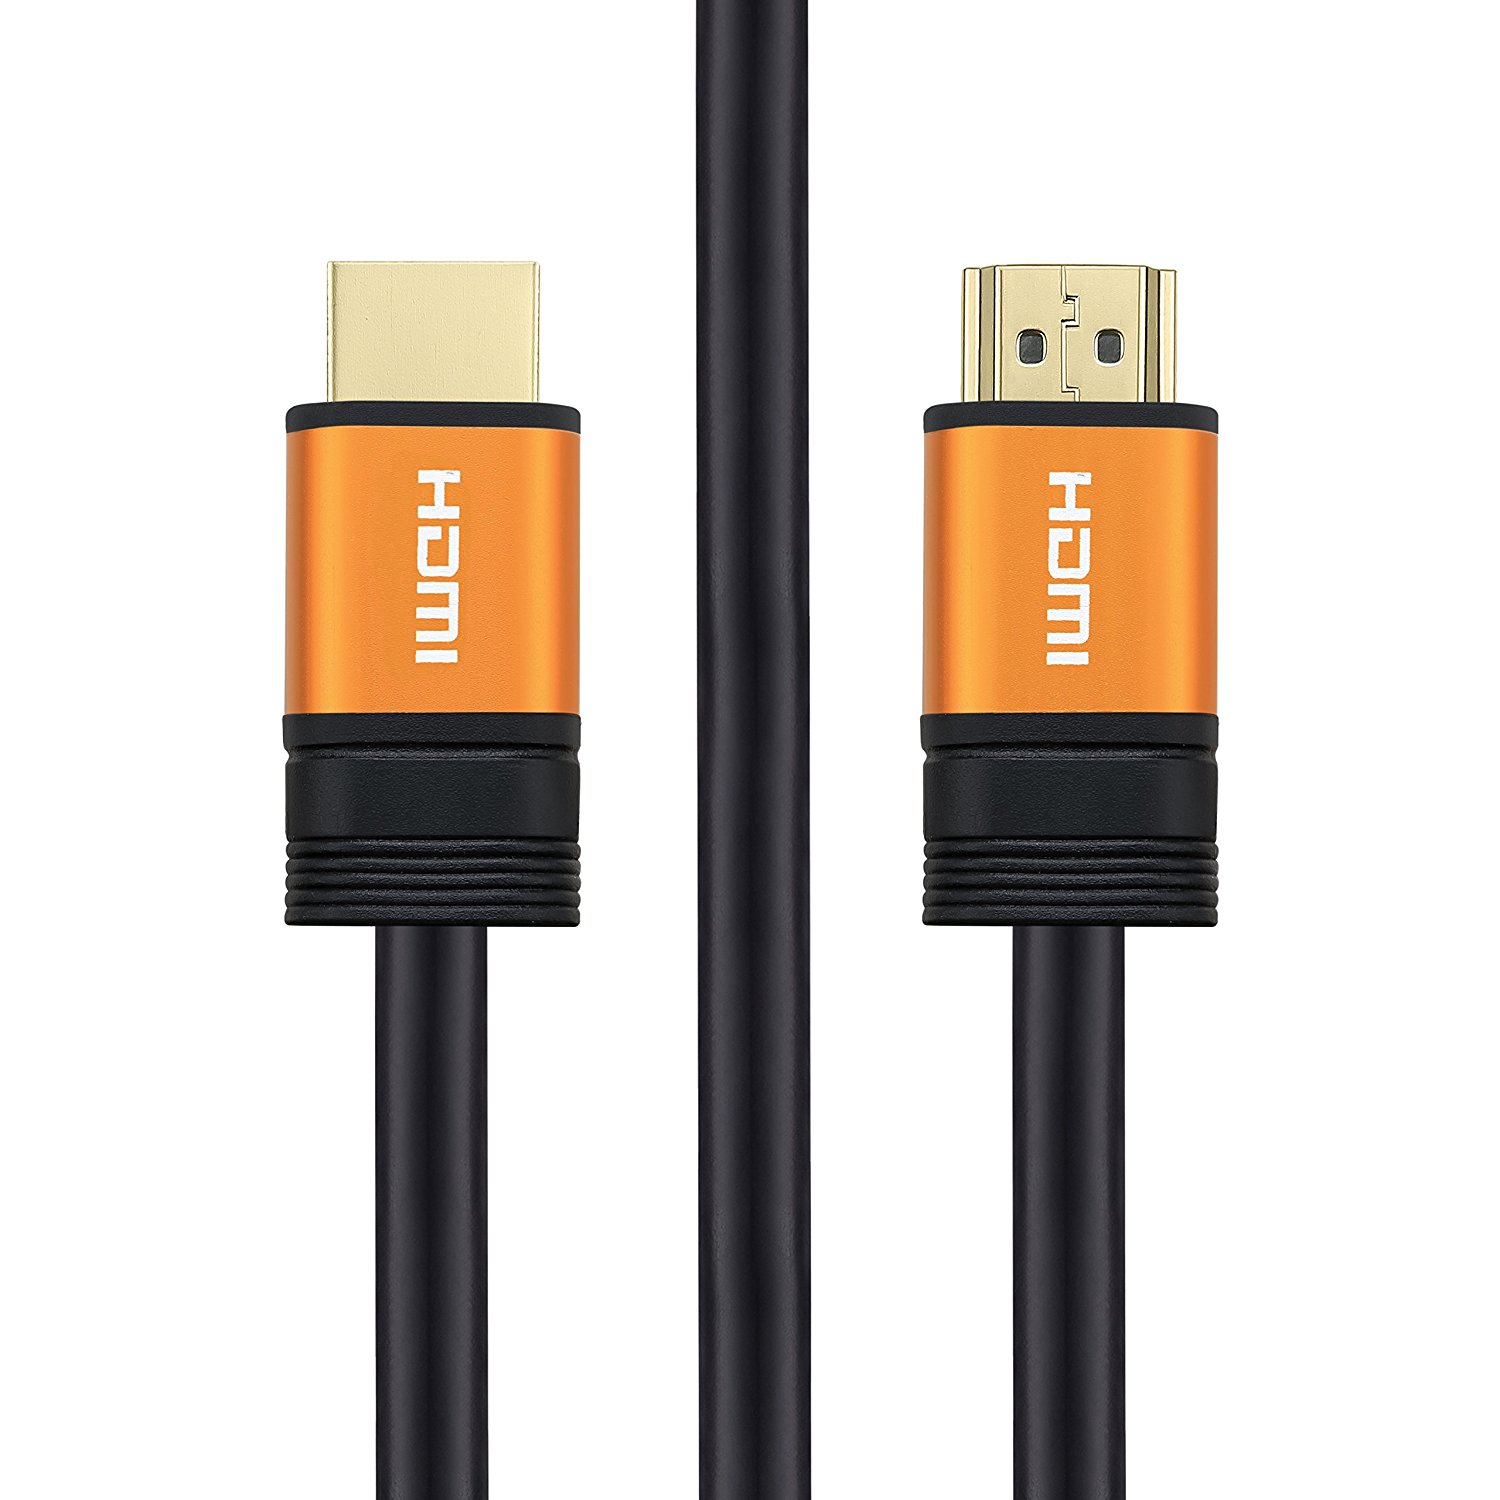 HDMI Cable - HDM015 Copper